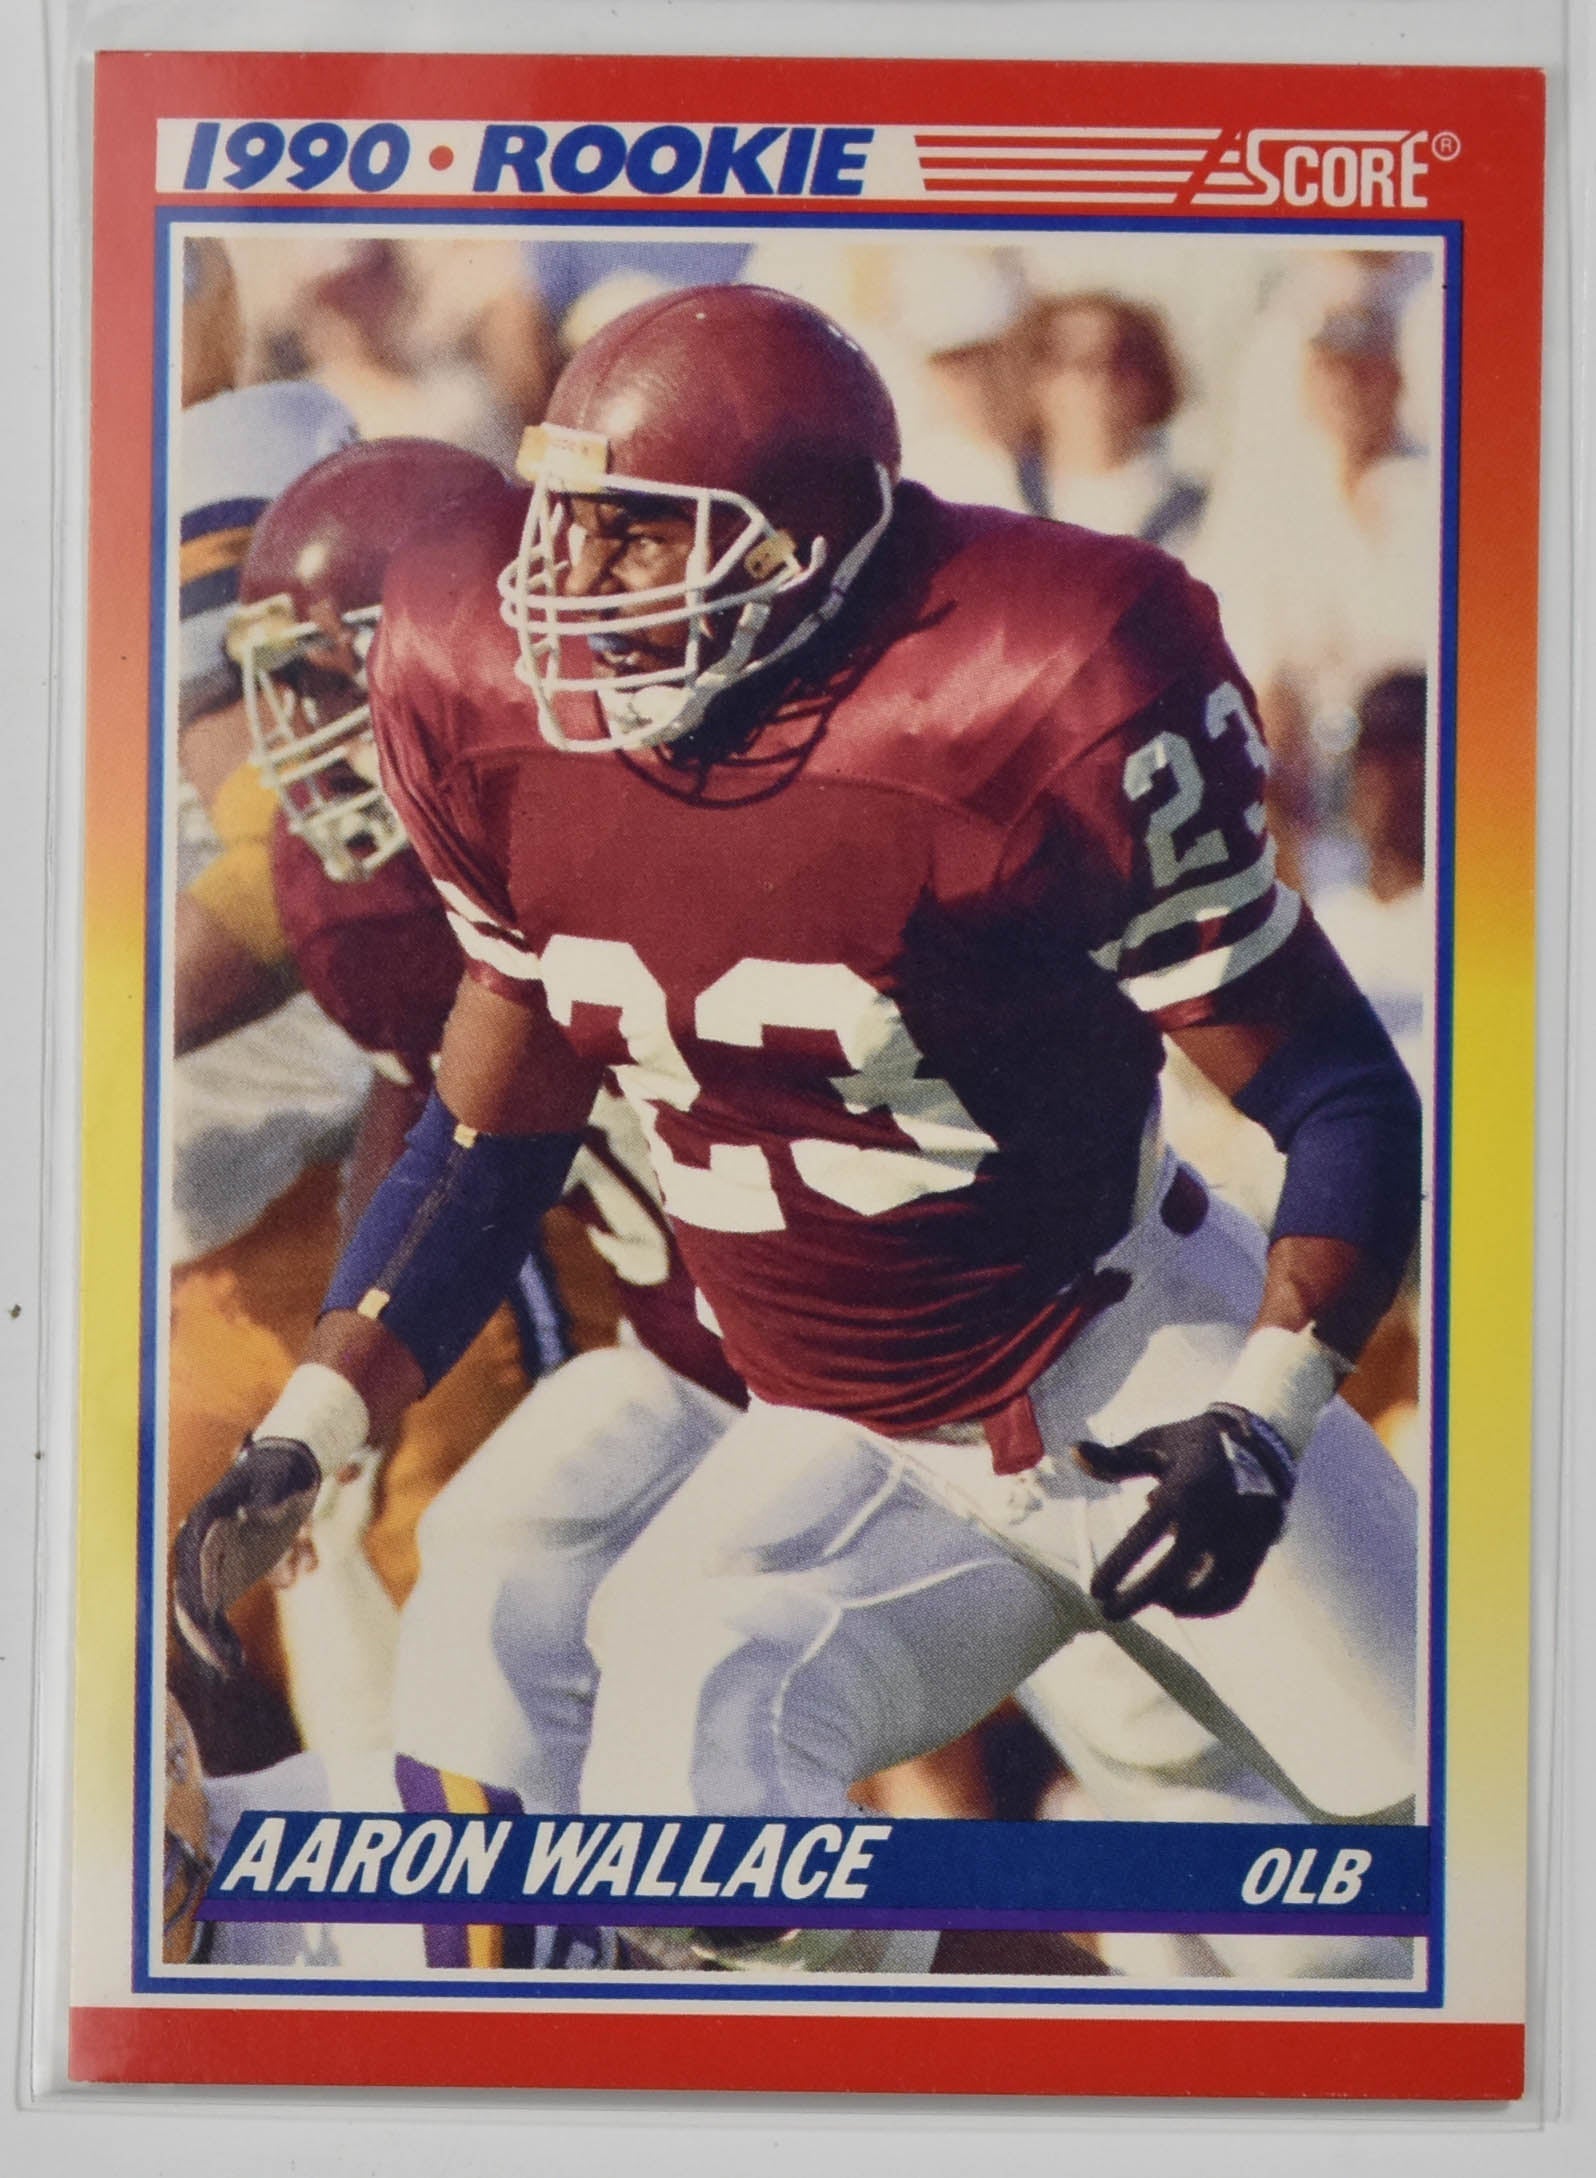 Aaron Wallace 620 Score Star Rookie 1990